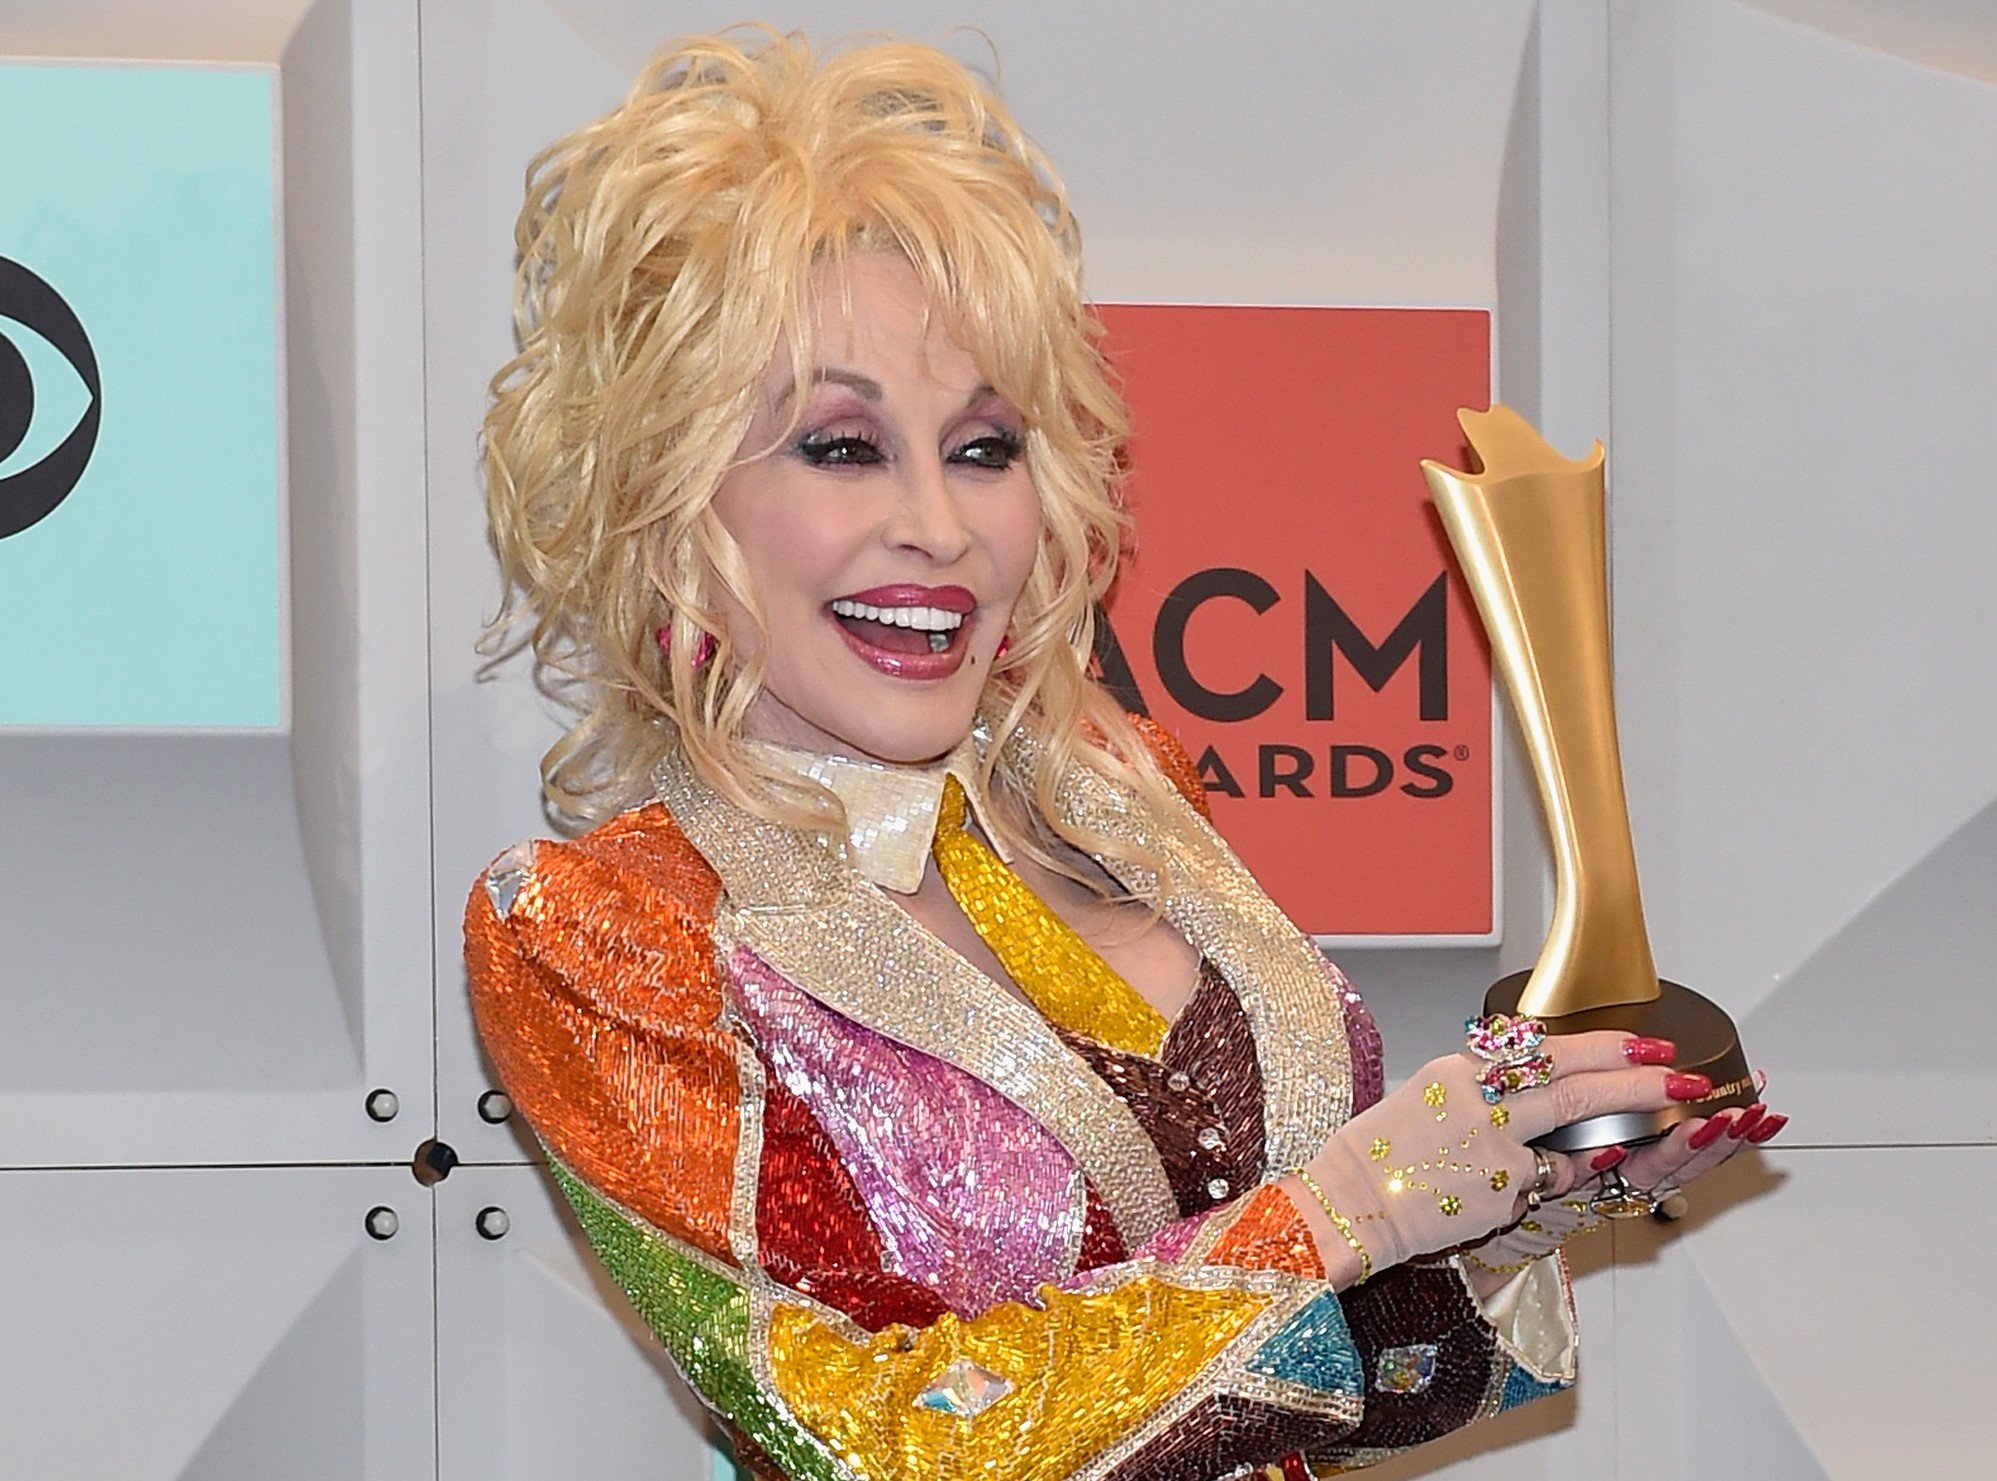 How Many Plastic Surgeries Has Dolly Parton Had